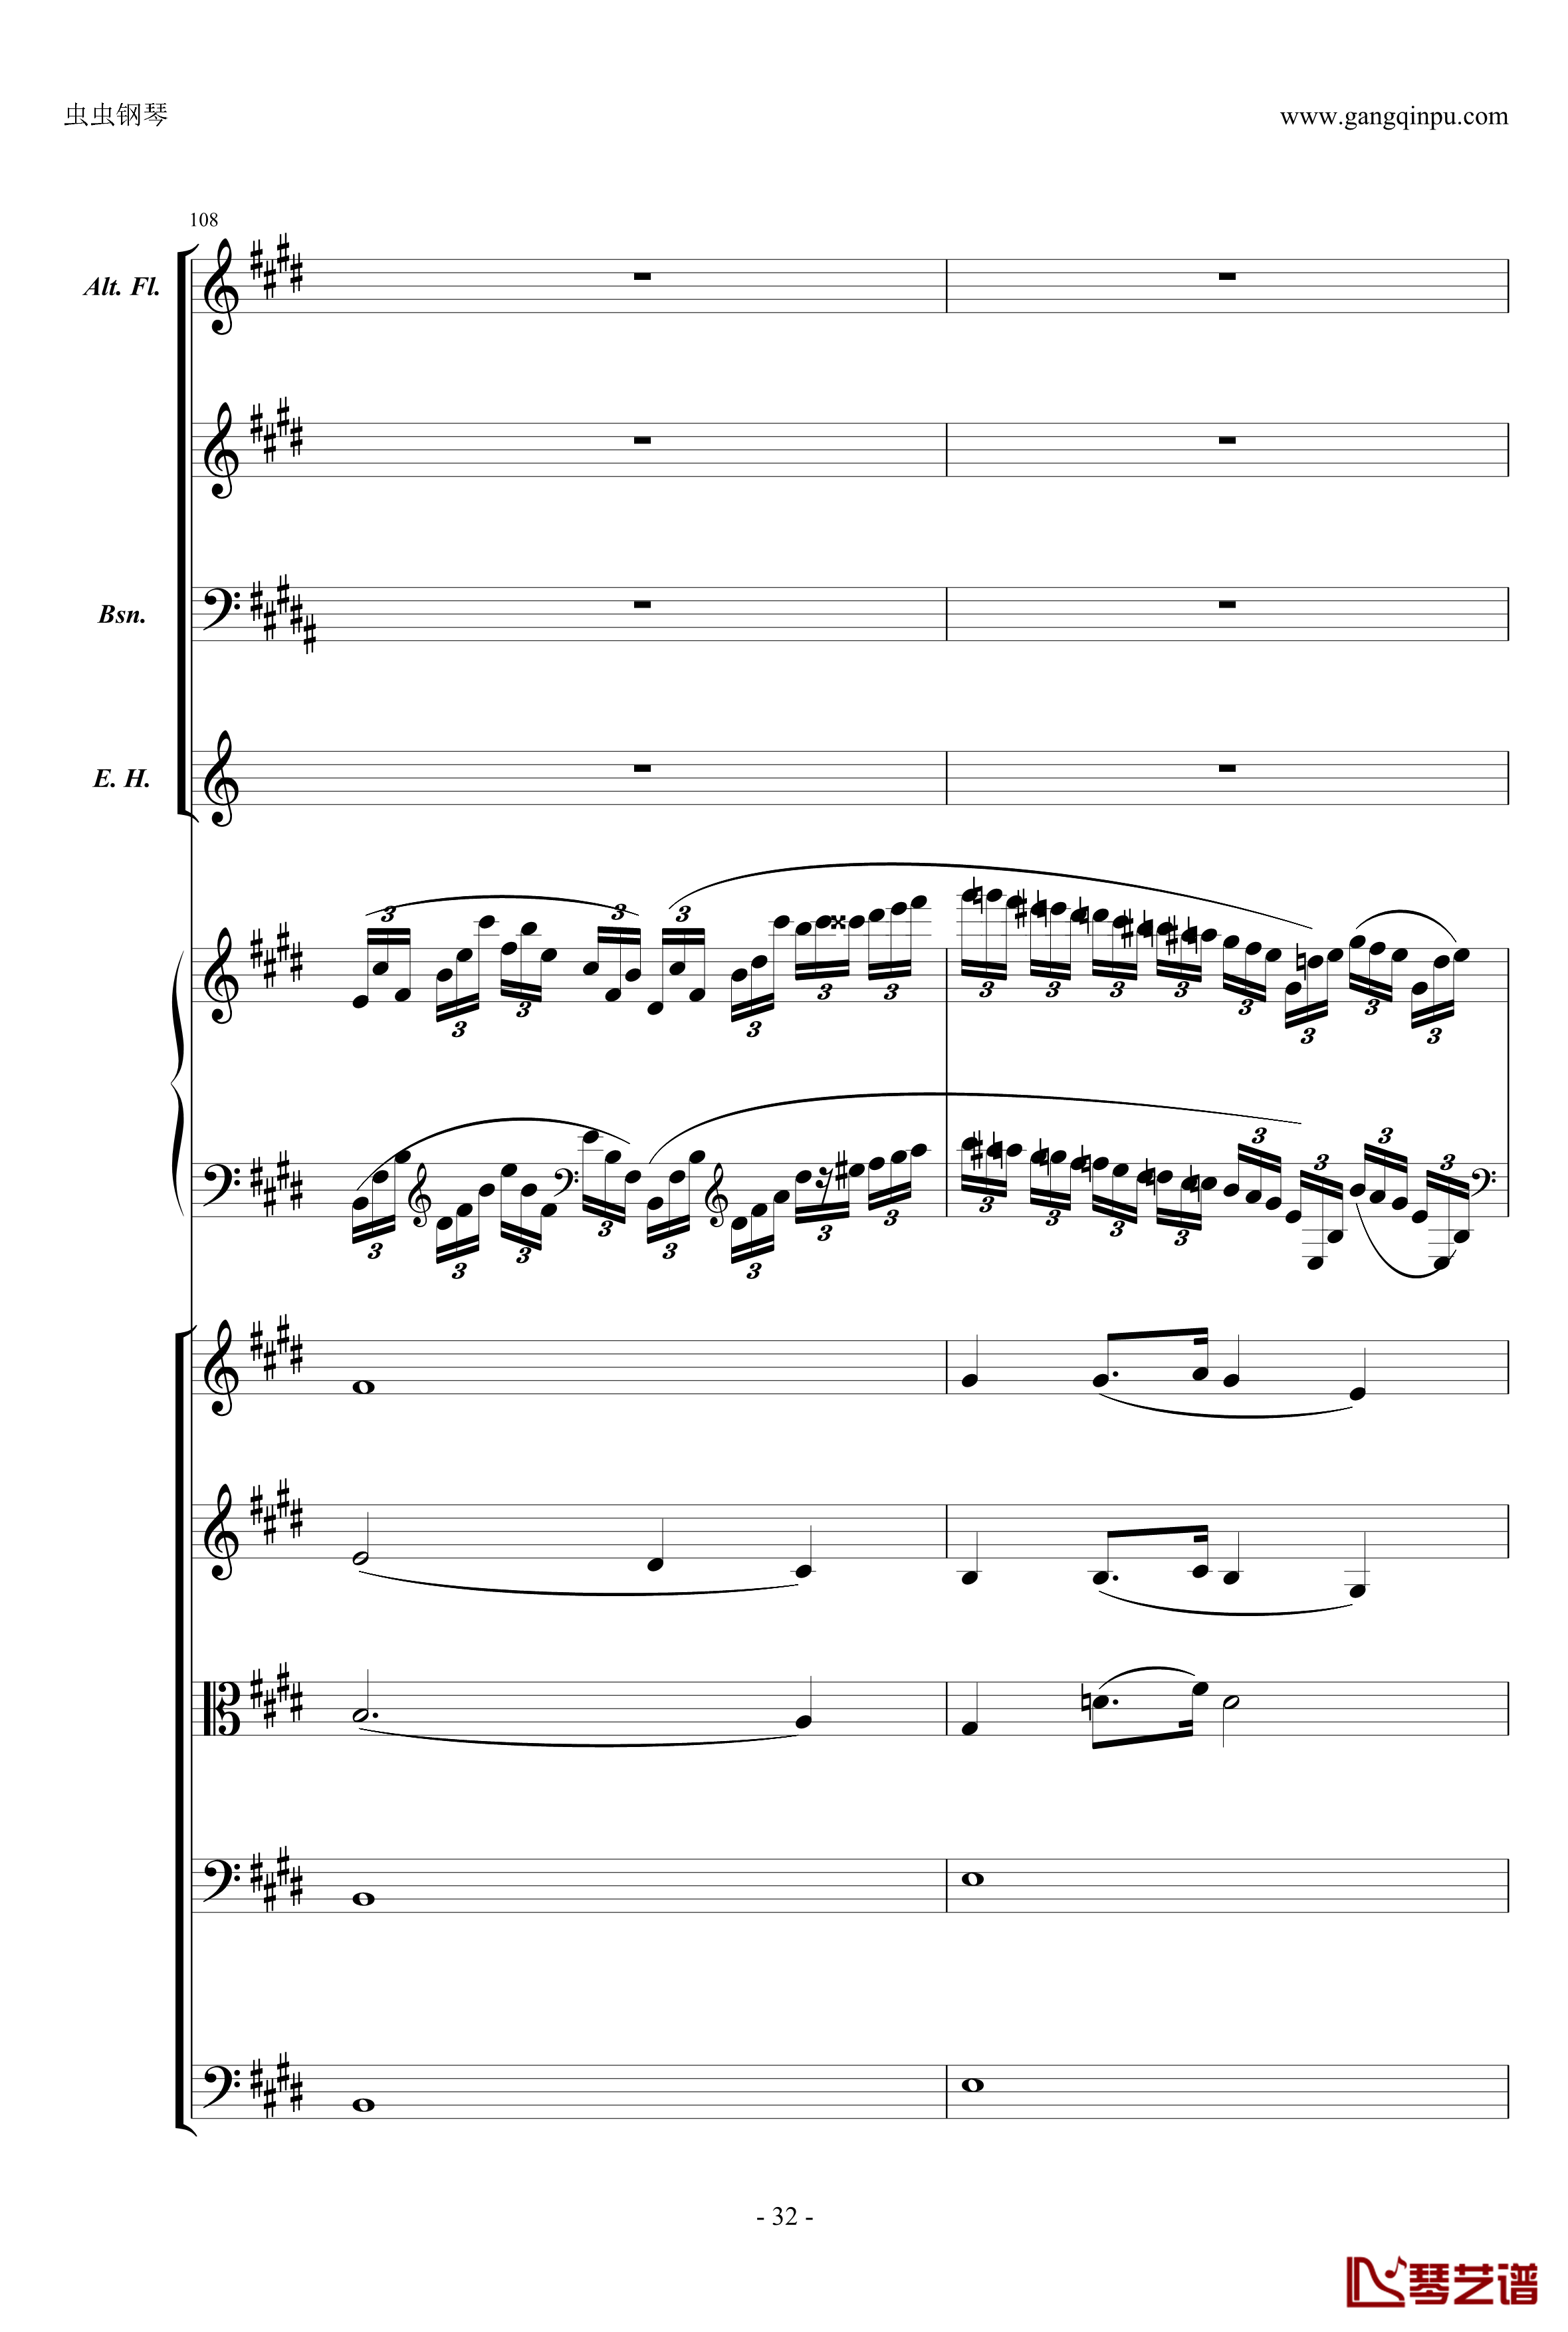 萧邦第一钢琴协奏曲第二乐章钢琴谱-肖邦-chopin32